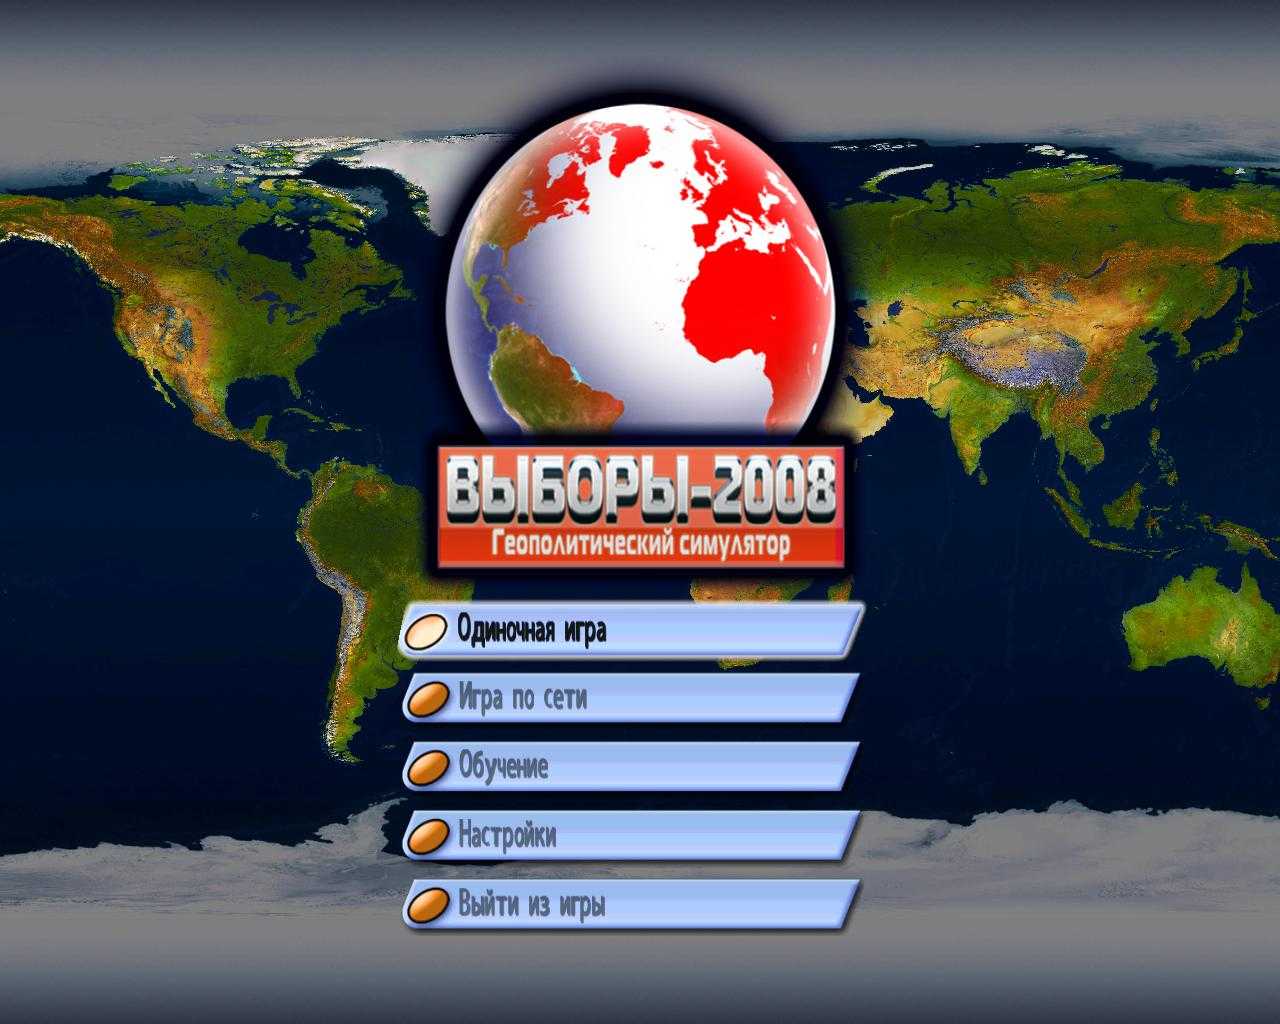 3 выборы и играем. Выборы-2008. Геополитический симулятор. Выборы 2008. Выборы 2008 игра. Игра геополитика.